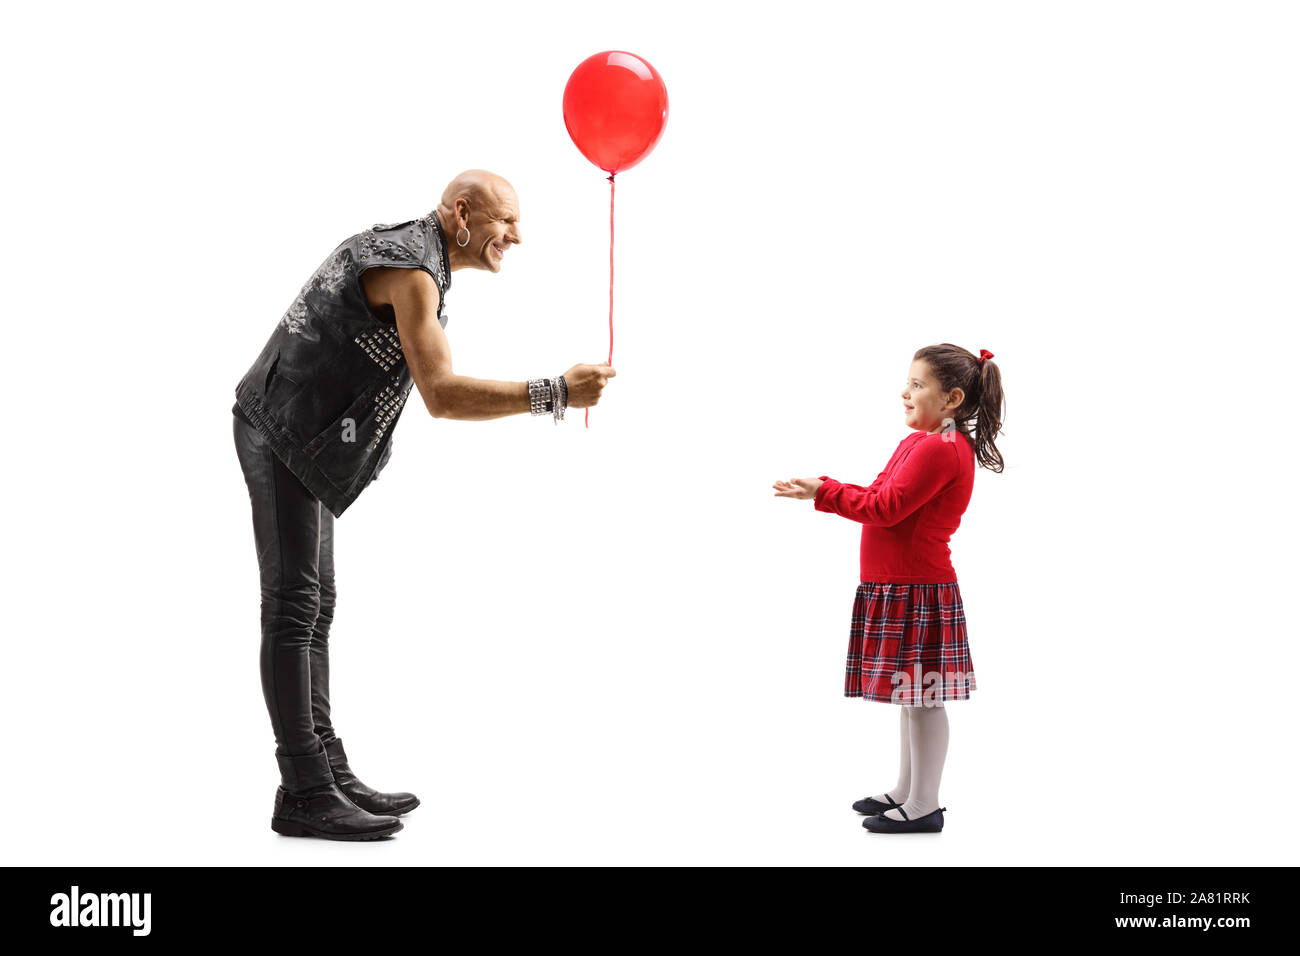 Volle Länge geschossen von einem männlichen Rock Star mit einem roten Ballon zu einem kleinen Mädchen auf weißem Hintergrund Stockfoto